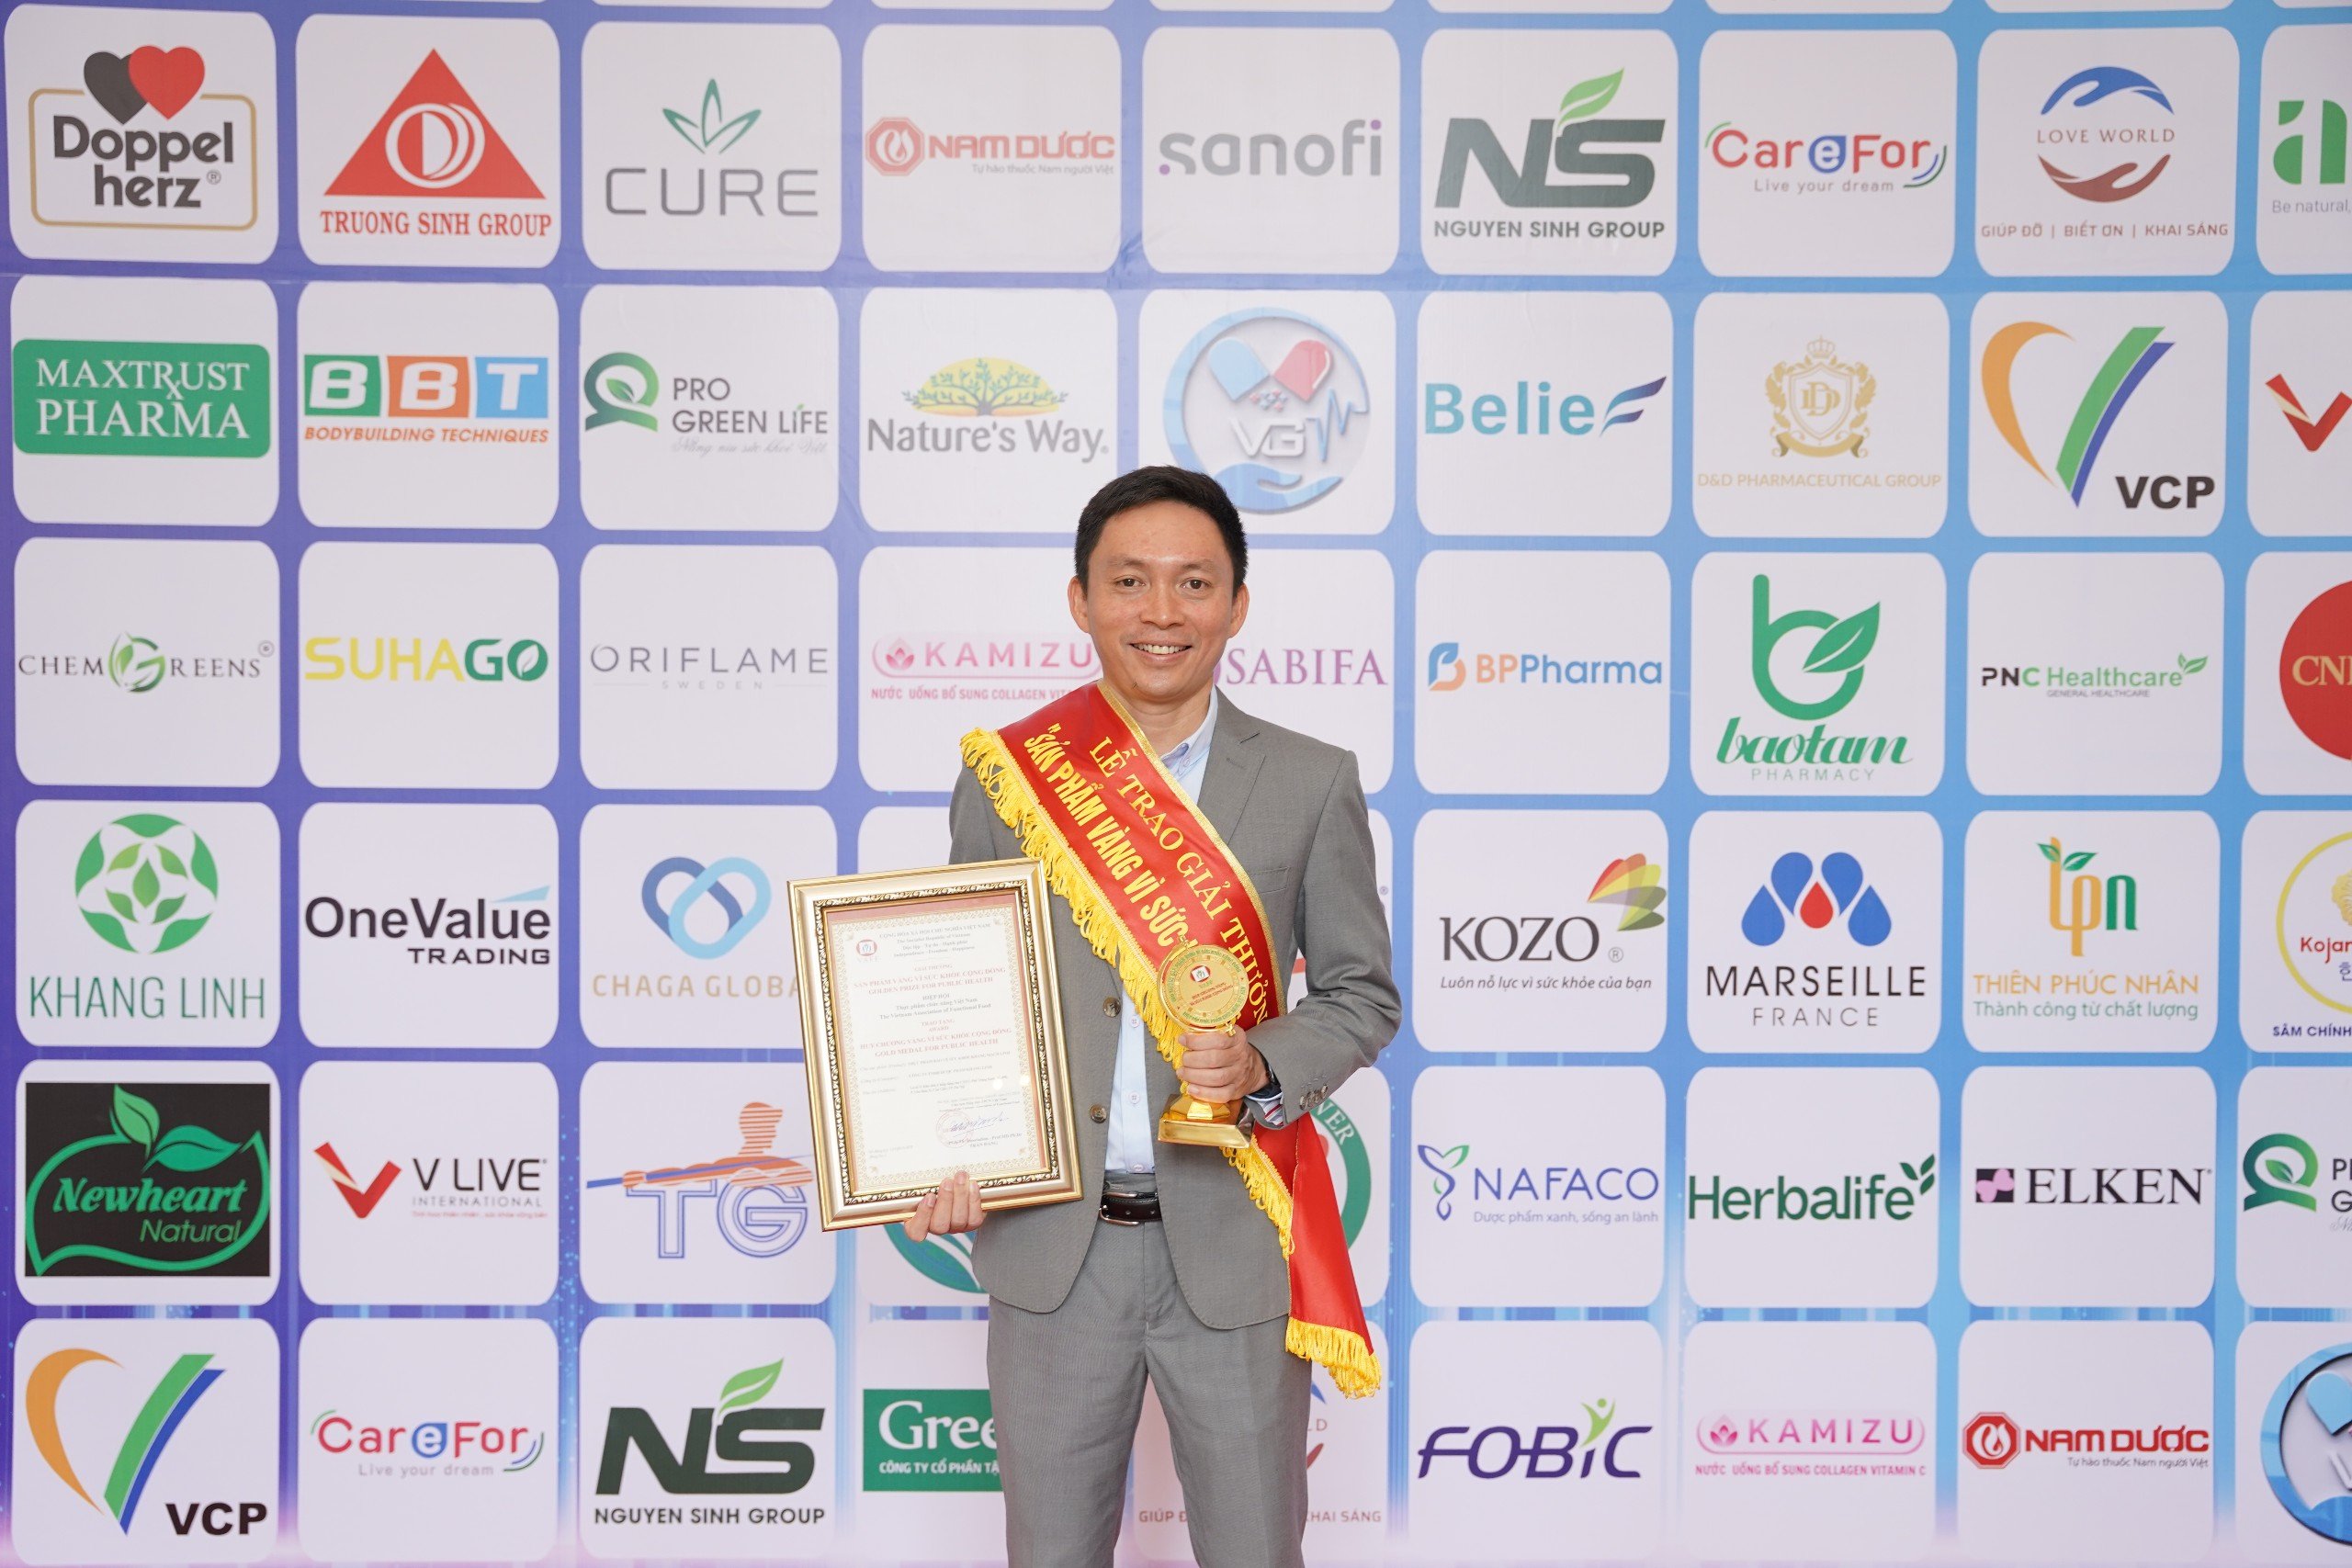 Dược phẩm Khang Linh nhận Huy chương “Sản phẩm vàng vì sức khỏe cộng đồng”